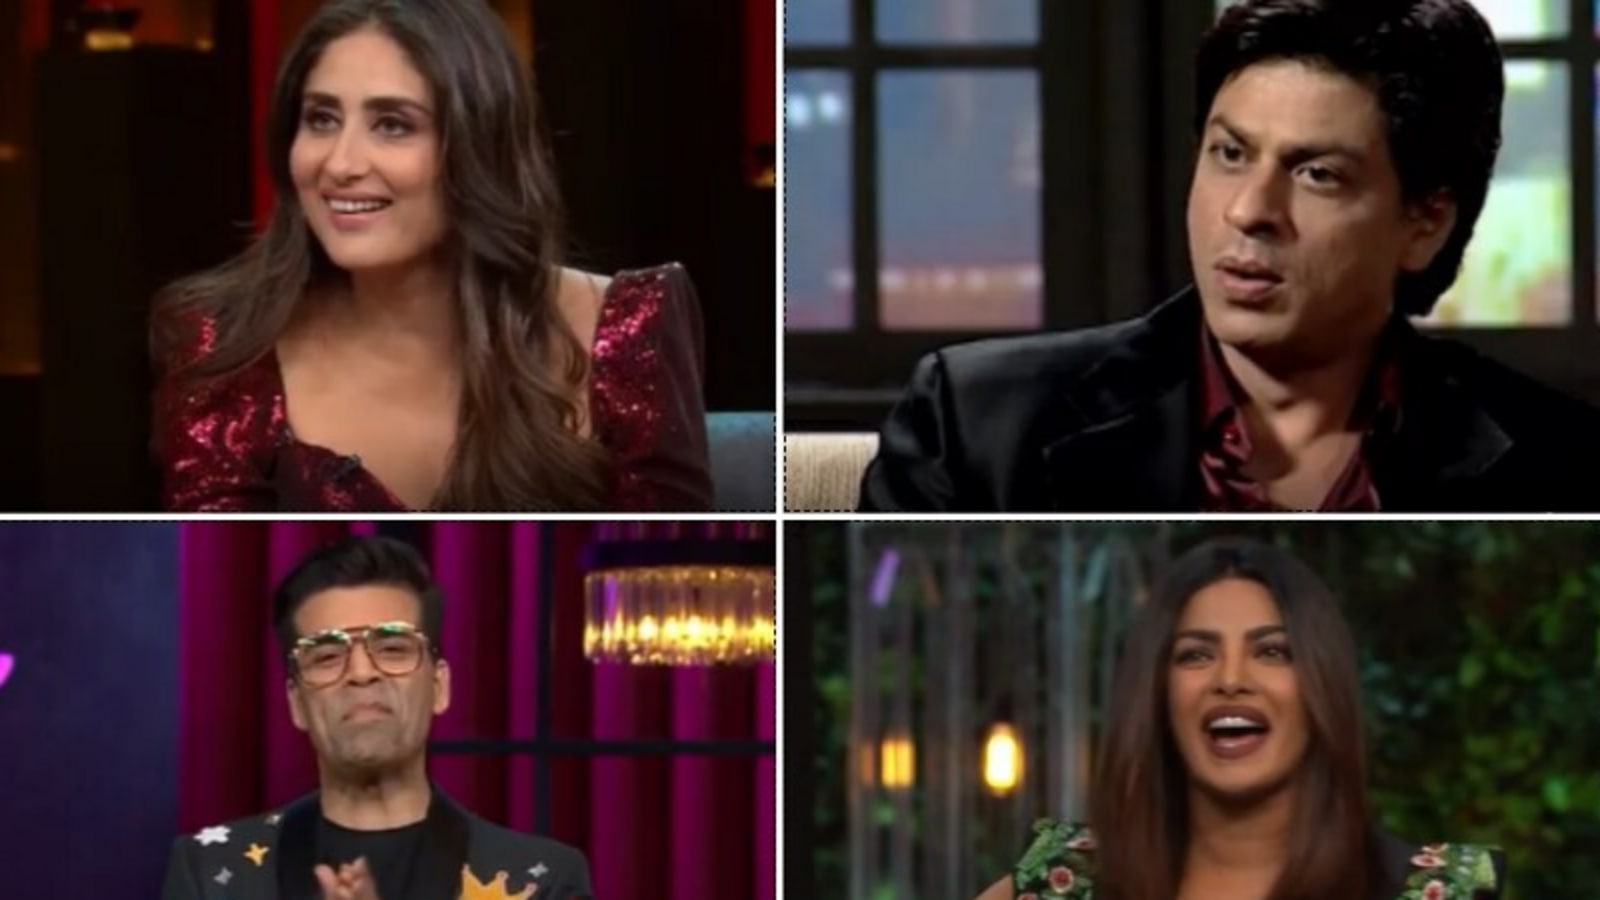 Koffee With Karan season 7 teaser: Karan Johar shares old clips of Kareena Kapoor, Priyanka Chopra, Shah Rukh Khan